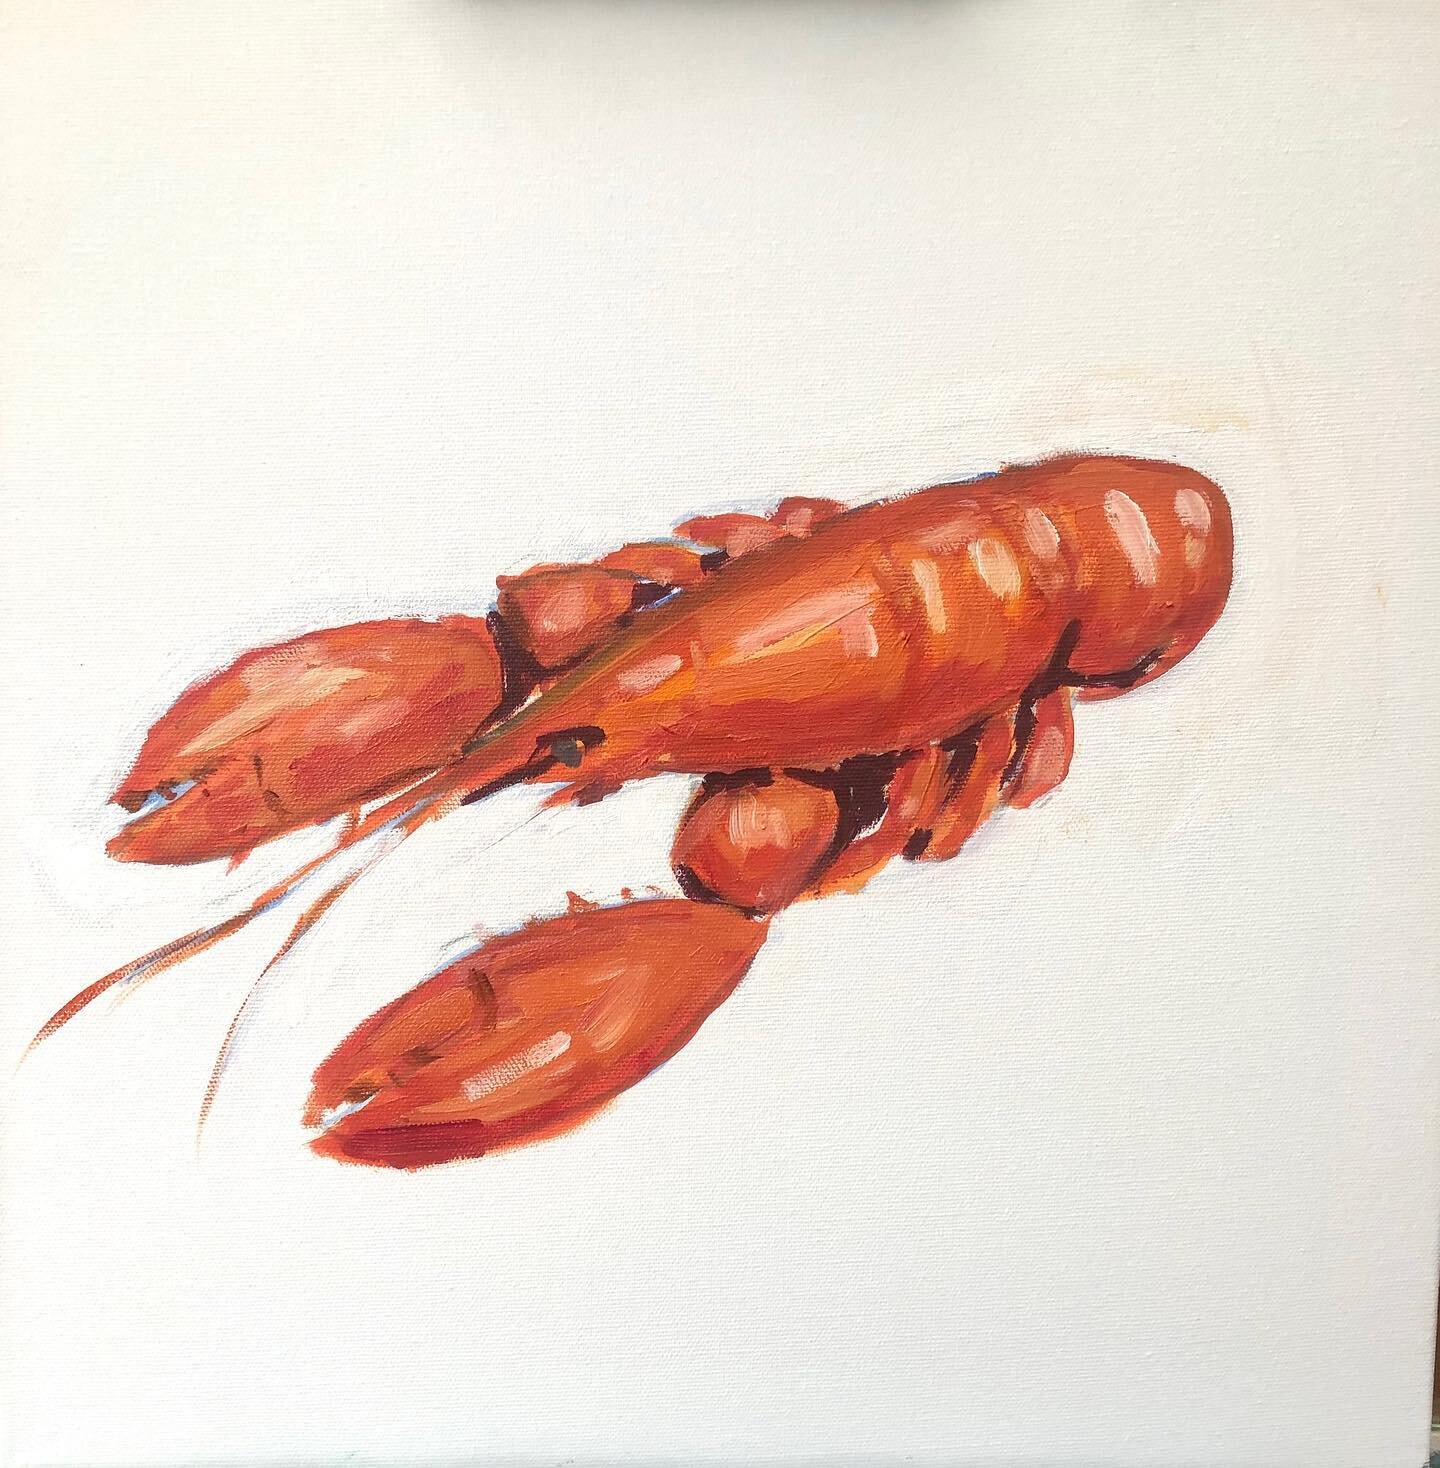 The Lobster #hughfairfaxoriginals #oiloncanvas #isleofwightartist #summervibes